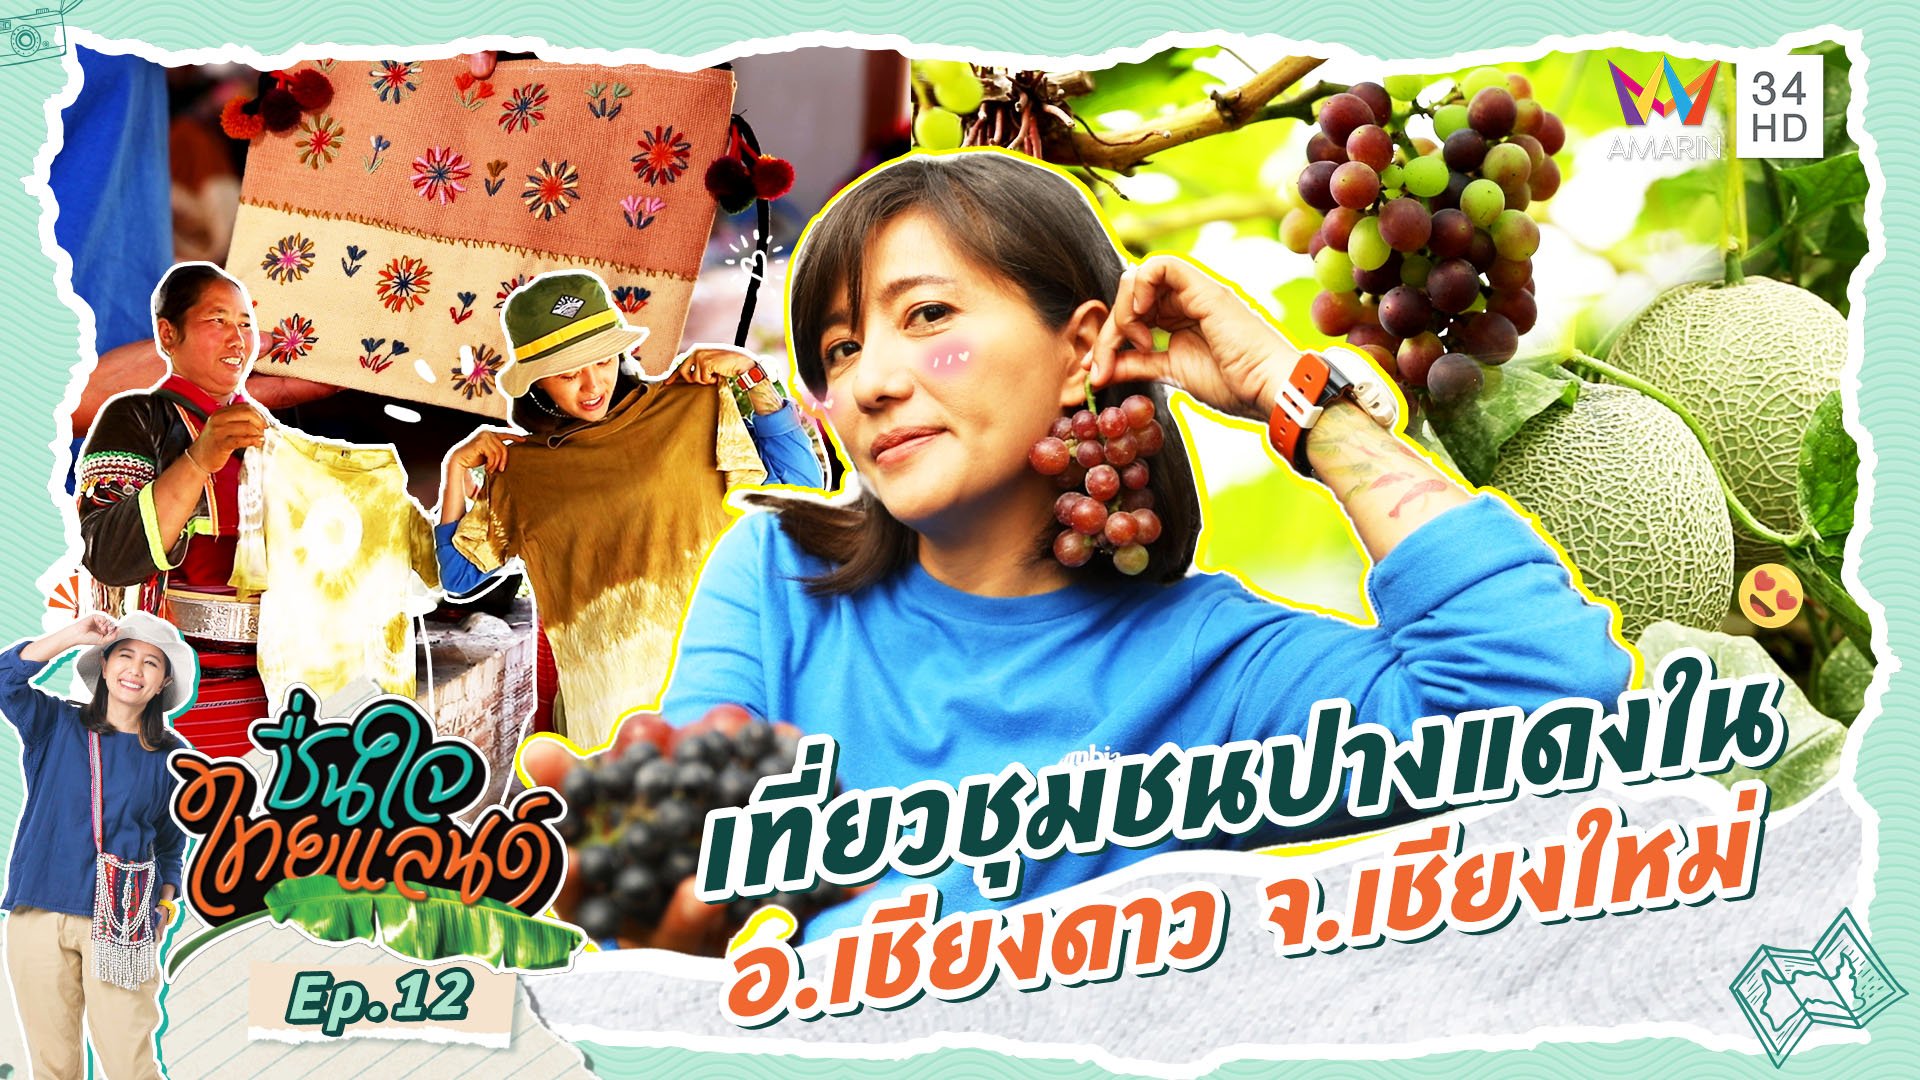 ชื่นใจไทยแลนด์ | EP.12 เที่ยวชุมชนปางแดงใน อ.เชียงดาว จ.เชียงใหม่ | 20 ม.ค. 67 | AMARIN TVHD34